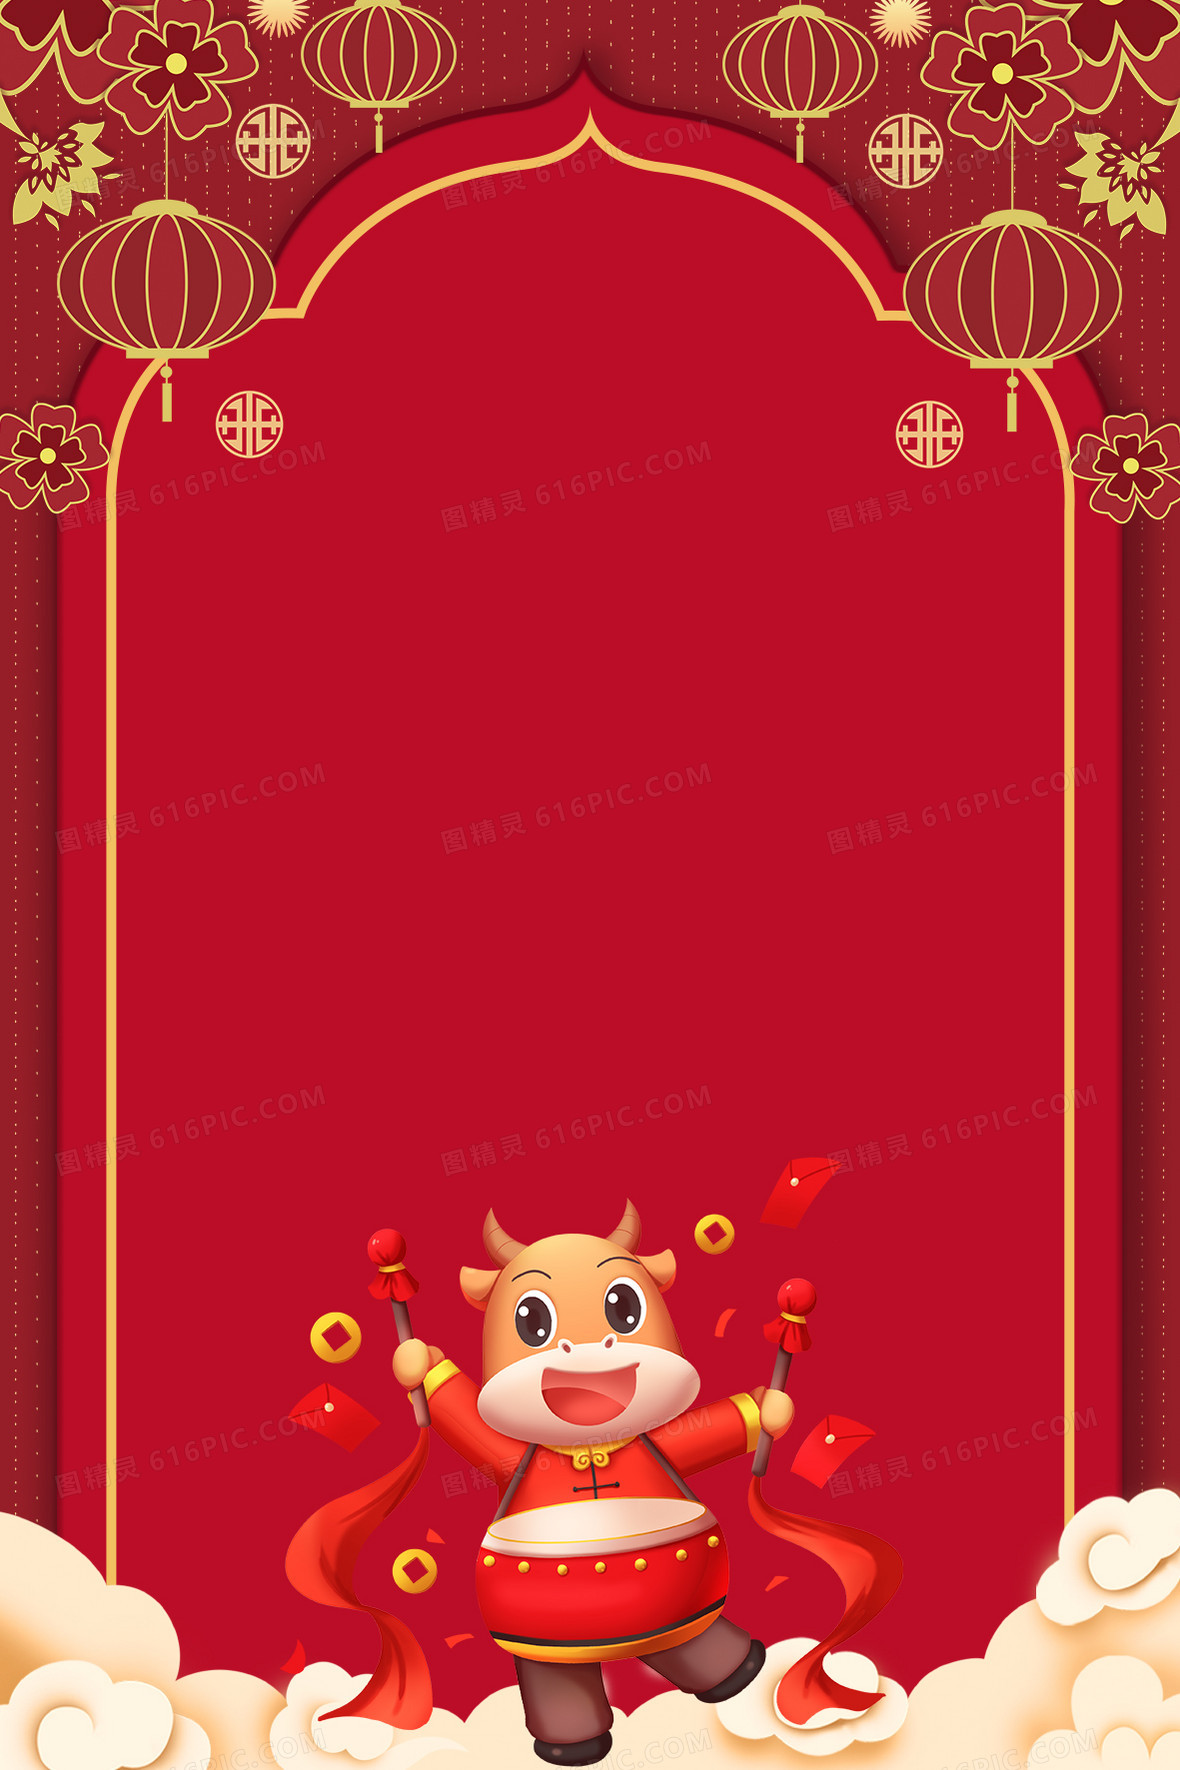 关键词:             2021中国年中国春节元旦喜庆中国风团圆